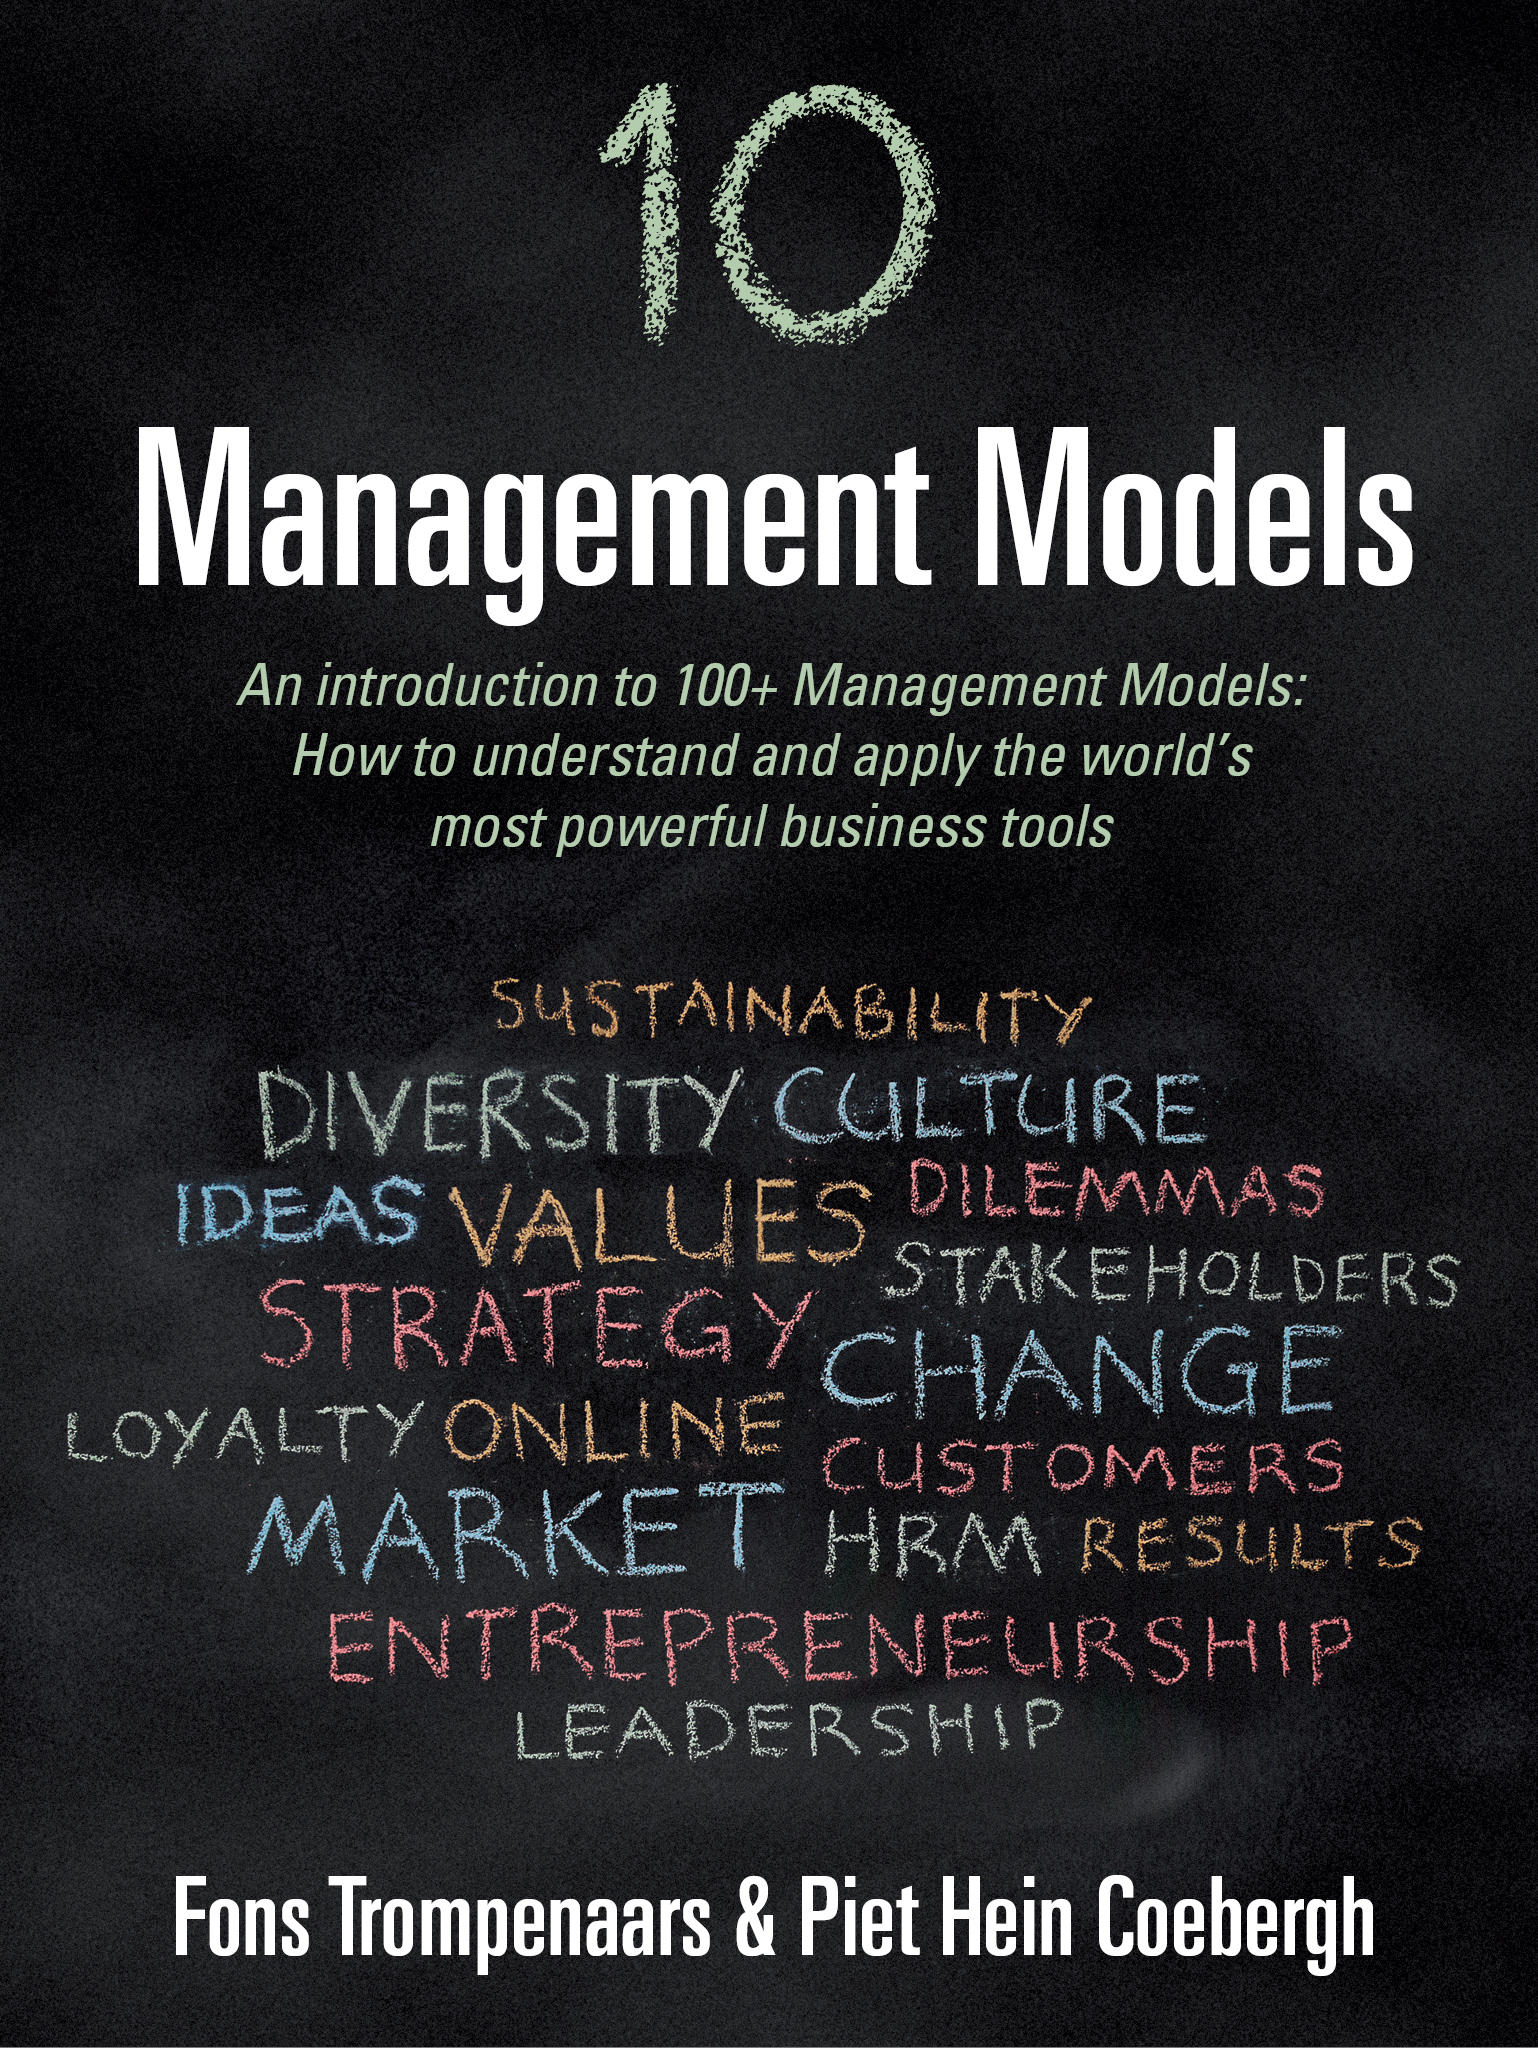 10 management models